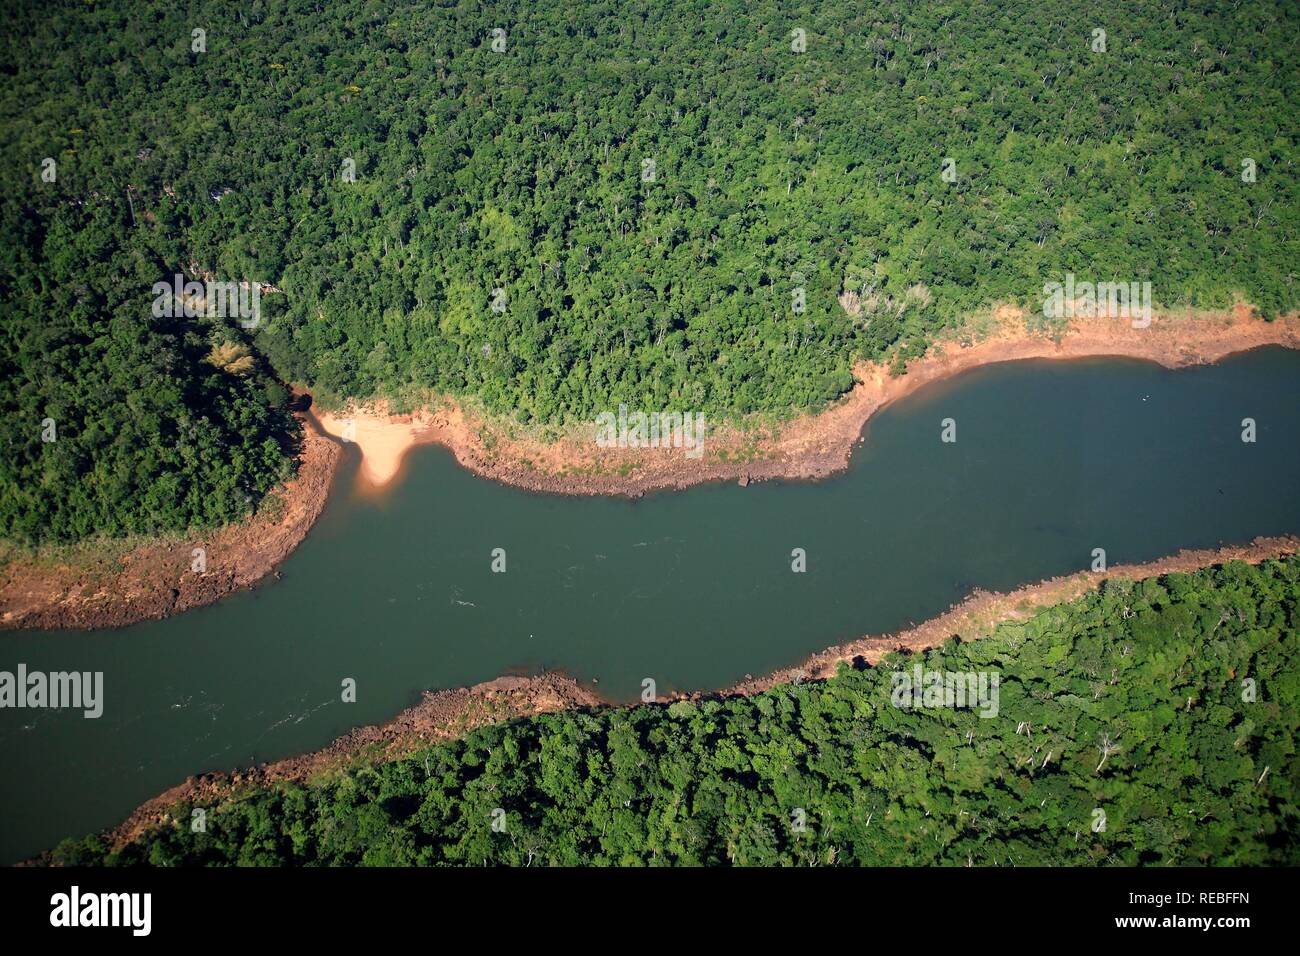 Foto aerea del Rio Iguacu fiume nella foresta pluviale brasiliana, Parana, Brasile, Sud America Foto Stock